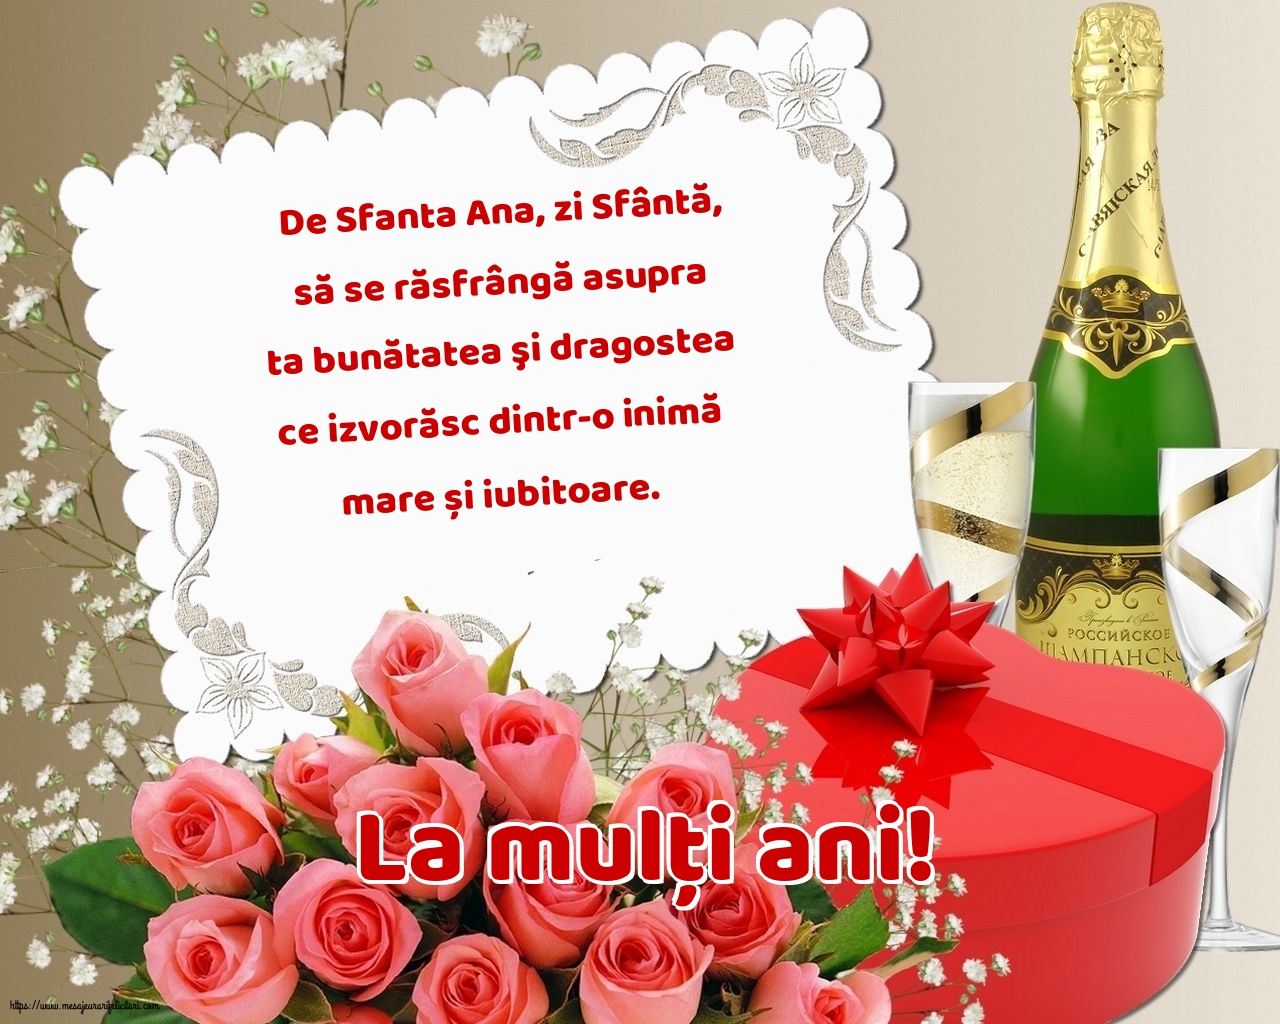 Felicitari de Sfanta Ana cu mesaje - La mulți ani!